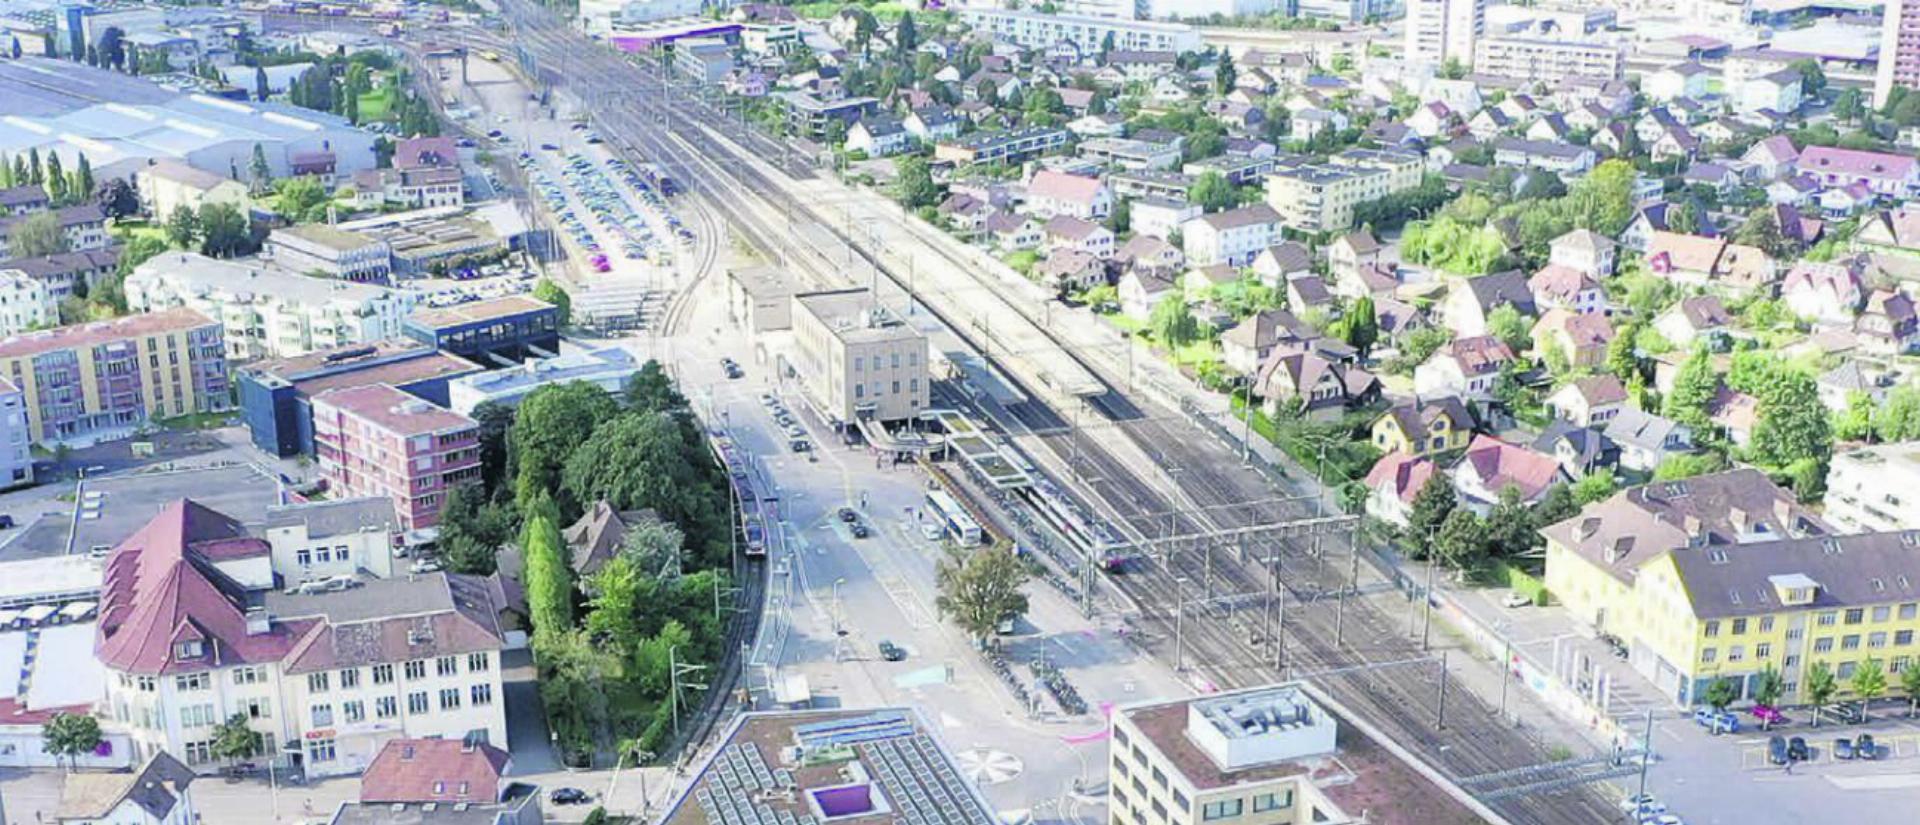 Der Bahnhof Lenzburg wird voraussichtlich bis Ende 2030 für rund 232 Millionen Franken umgebaut und den neuen Bedürfnissen angepasst. Bild: SBB